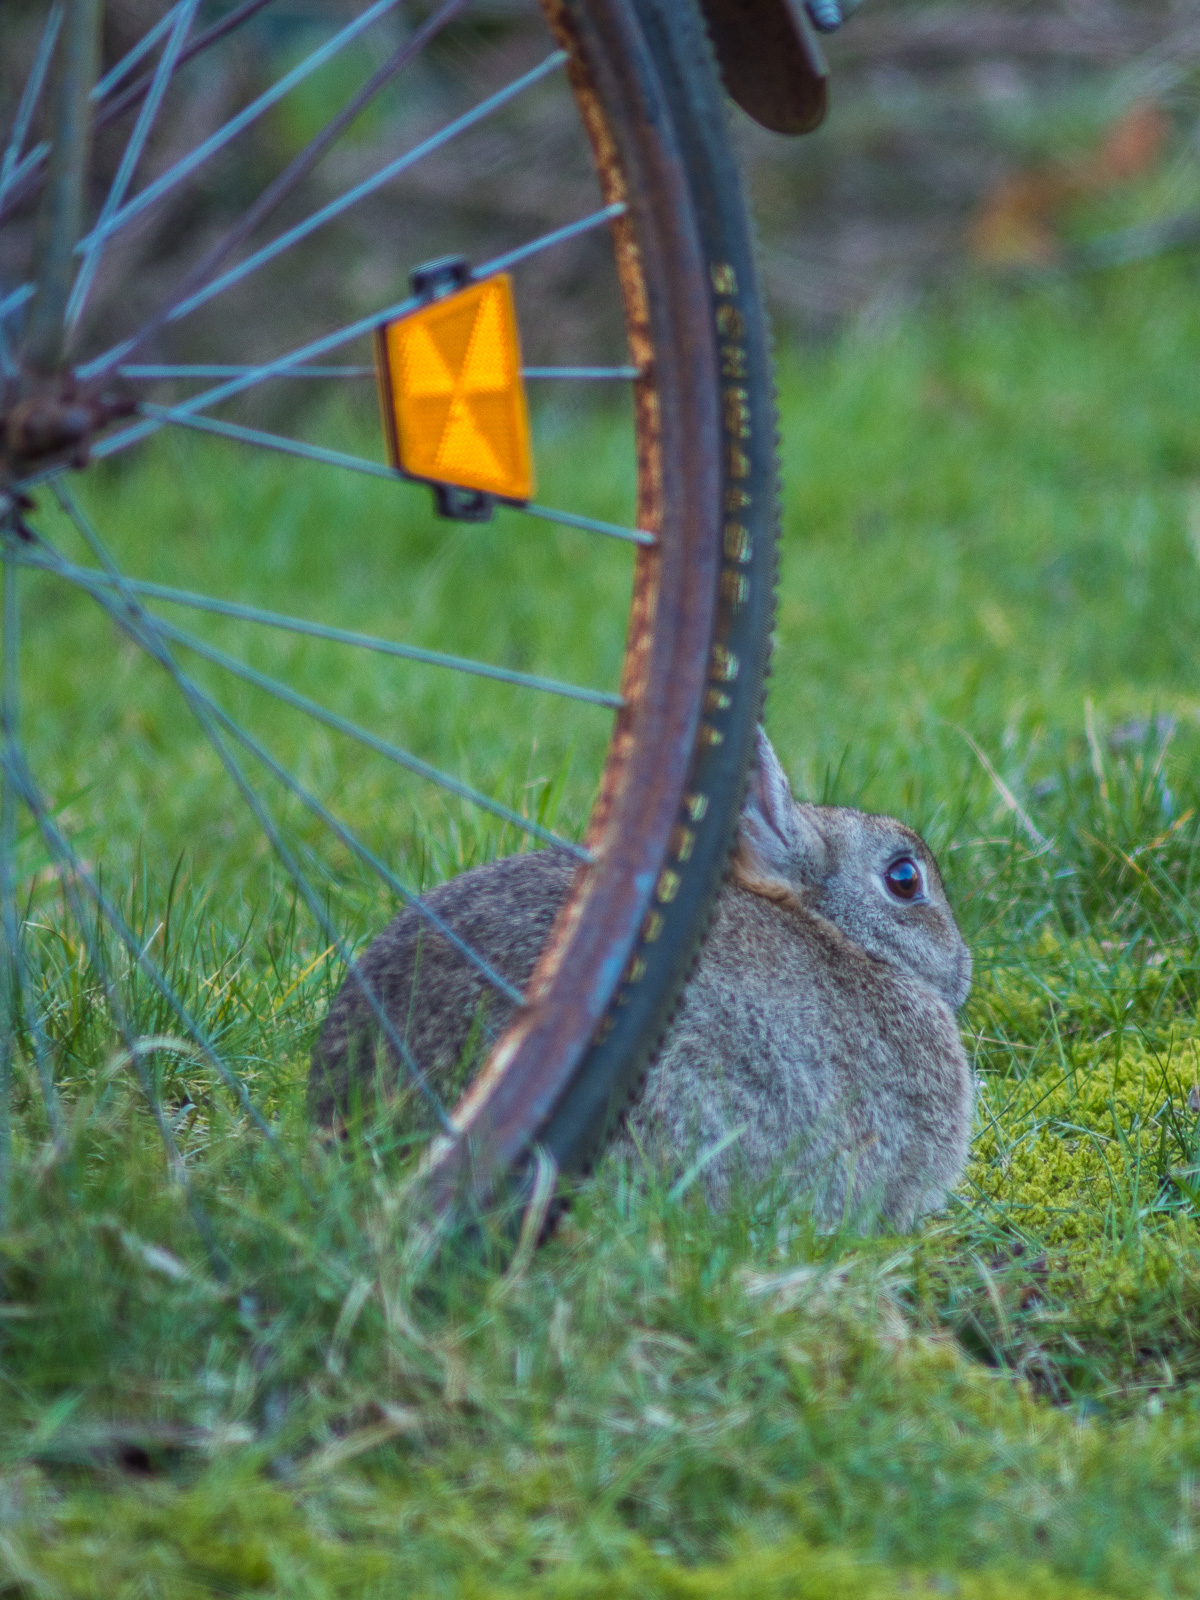 Kaninchen auf dem Rasen, hinter dem Reifen eines alten Fahrrads